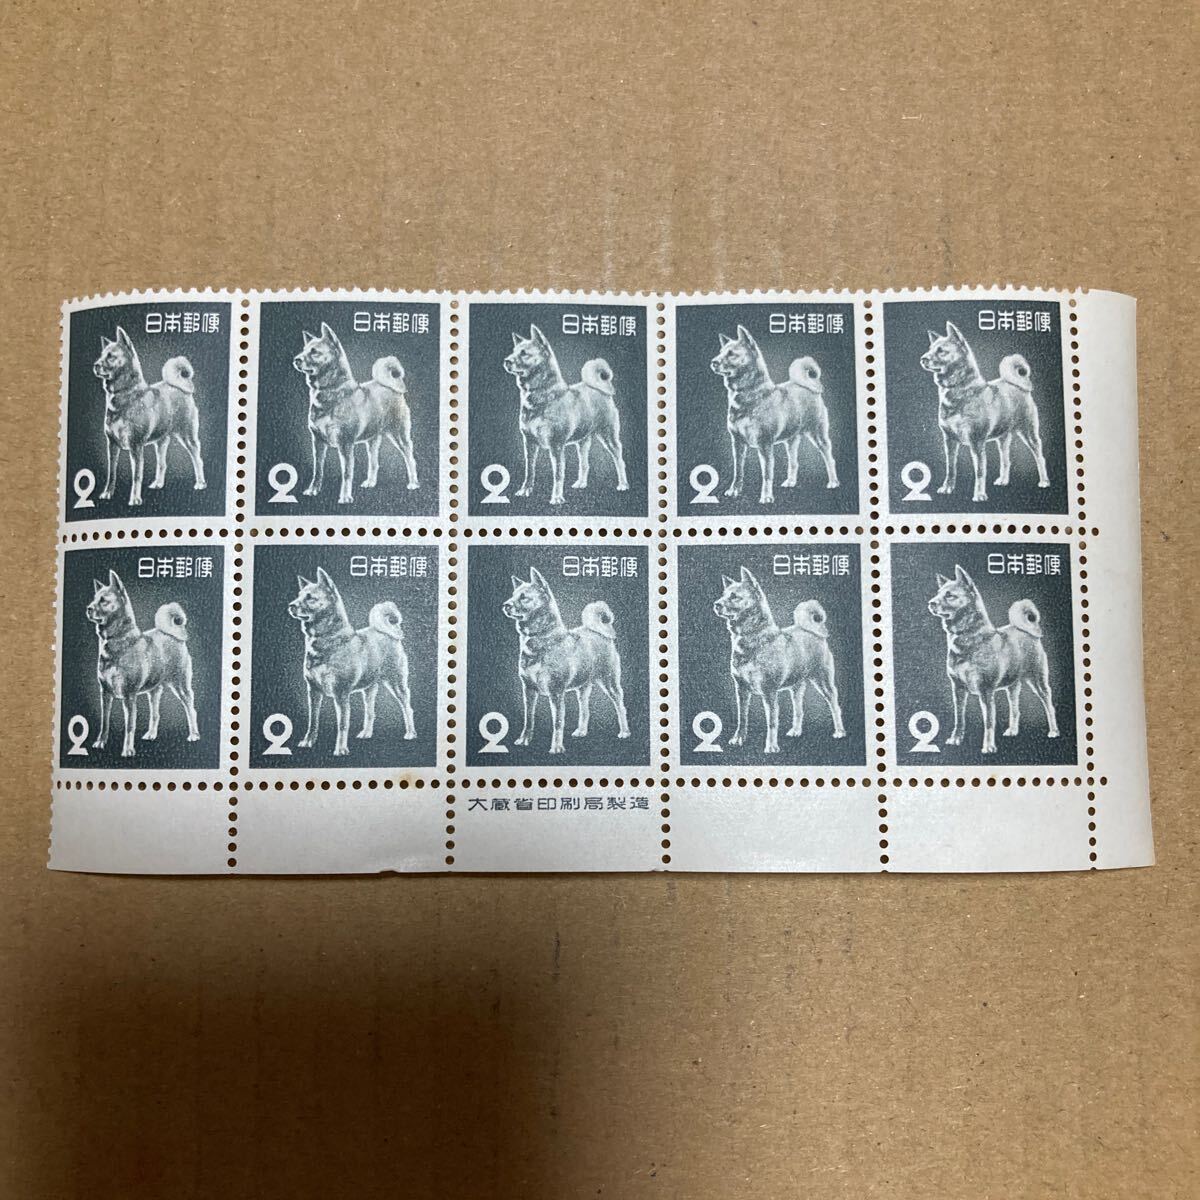 切手 秋田犬 2円 10枚ブロック 銘版付き の画像1